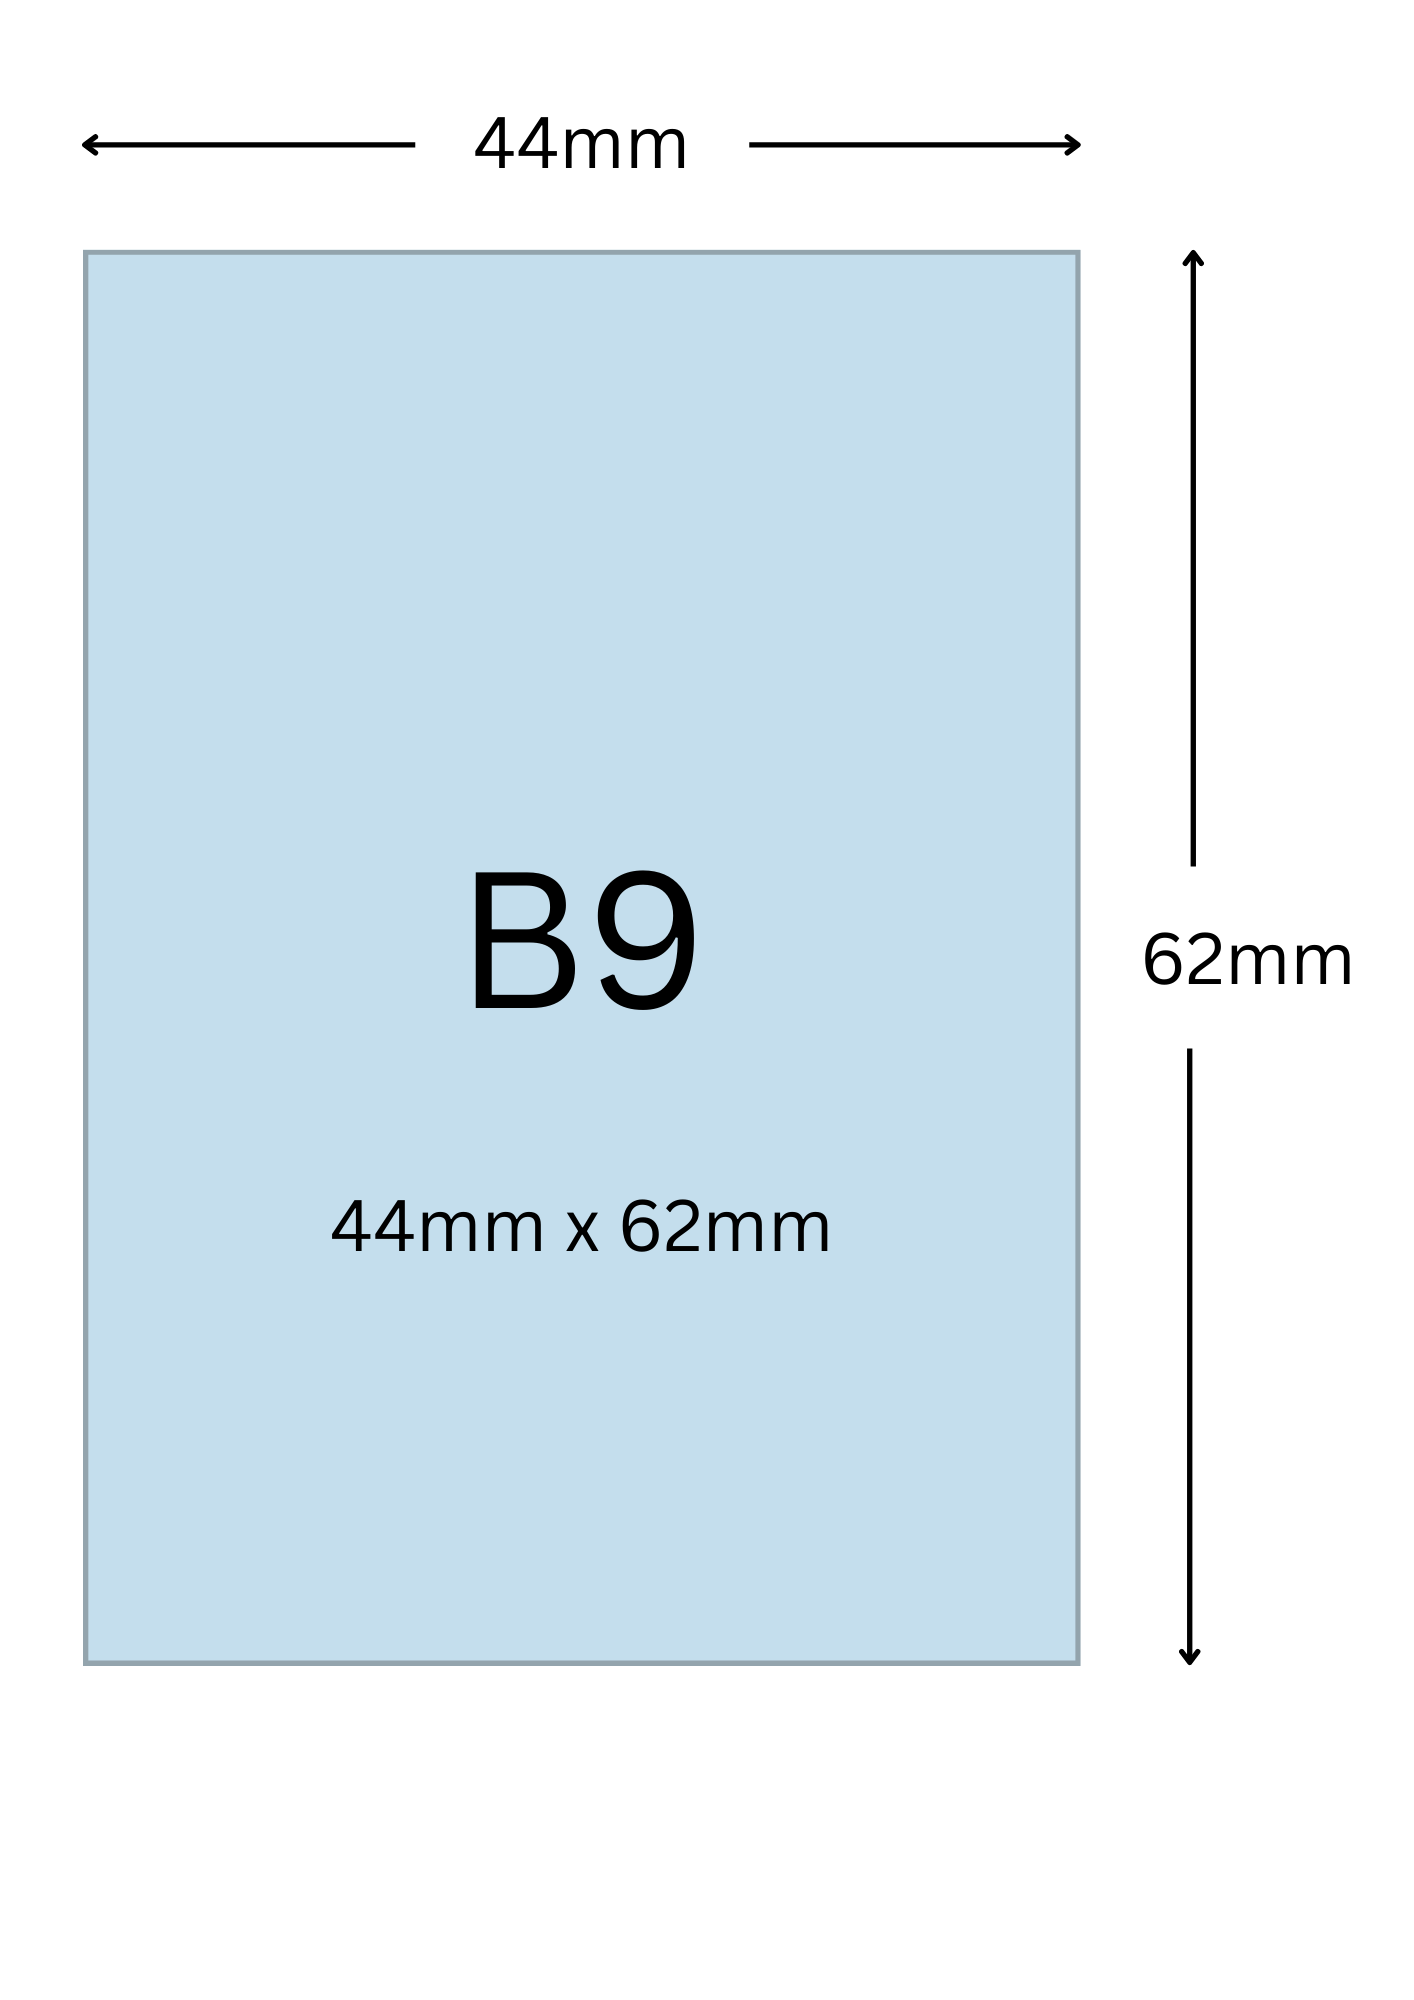 B9尺寸公分, B9紙張尺寸大小, B9紙張對應開數是幾開